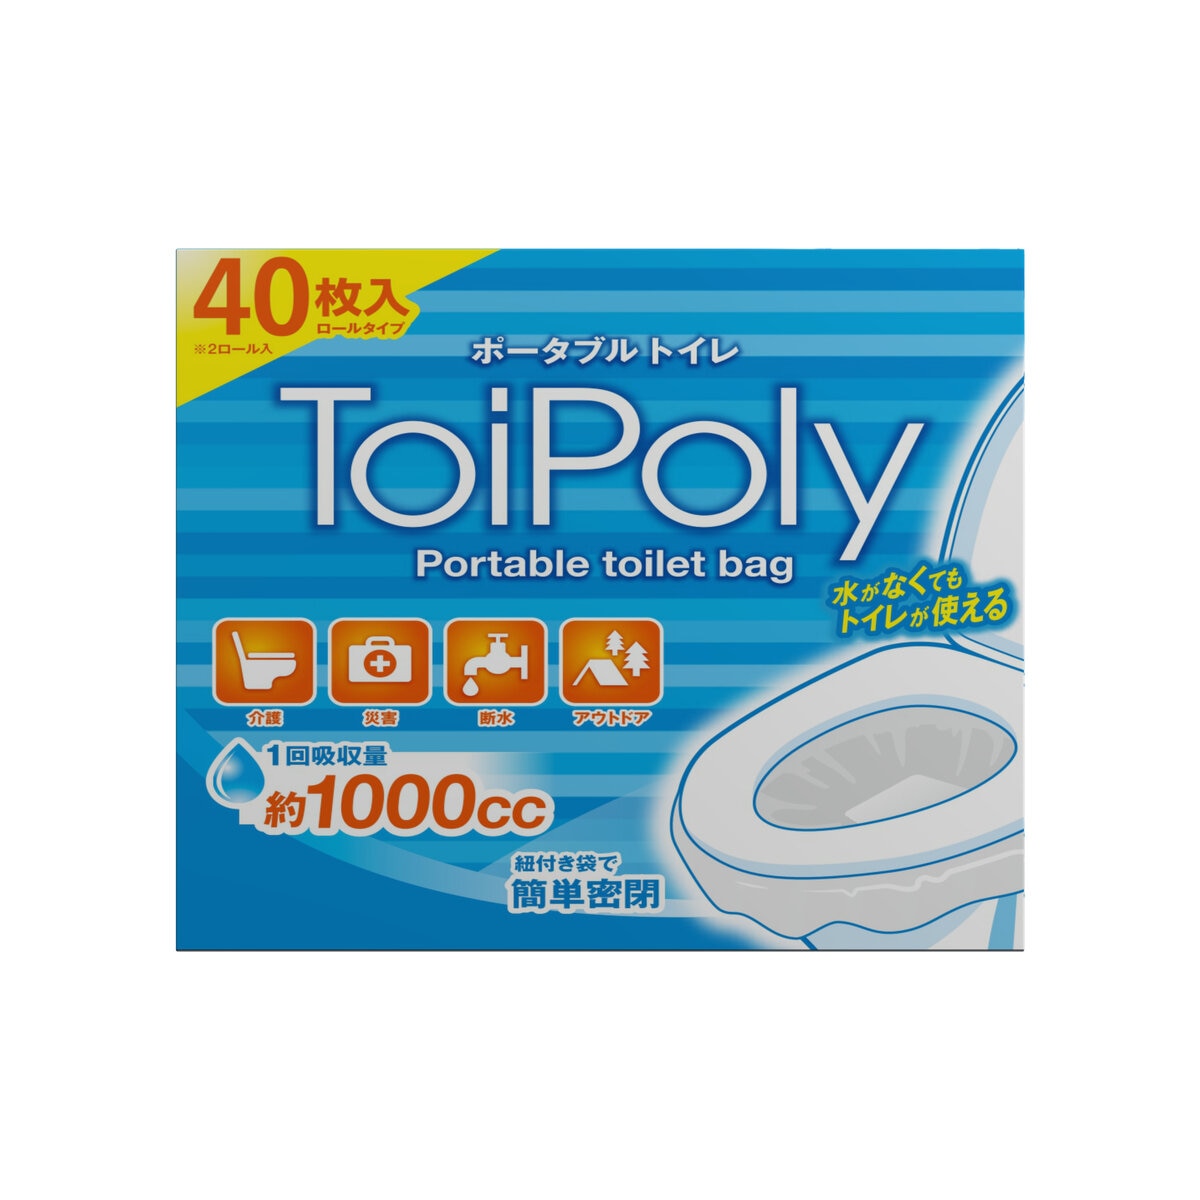 トイポリー ポータブルトイレ バッグ 40枚 Costco Japan